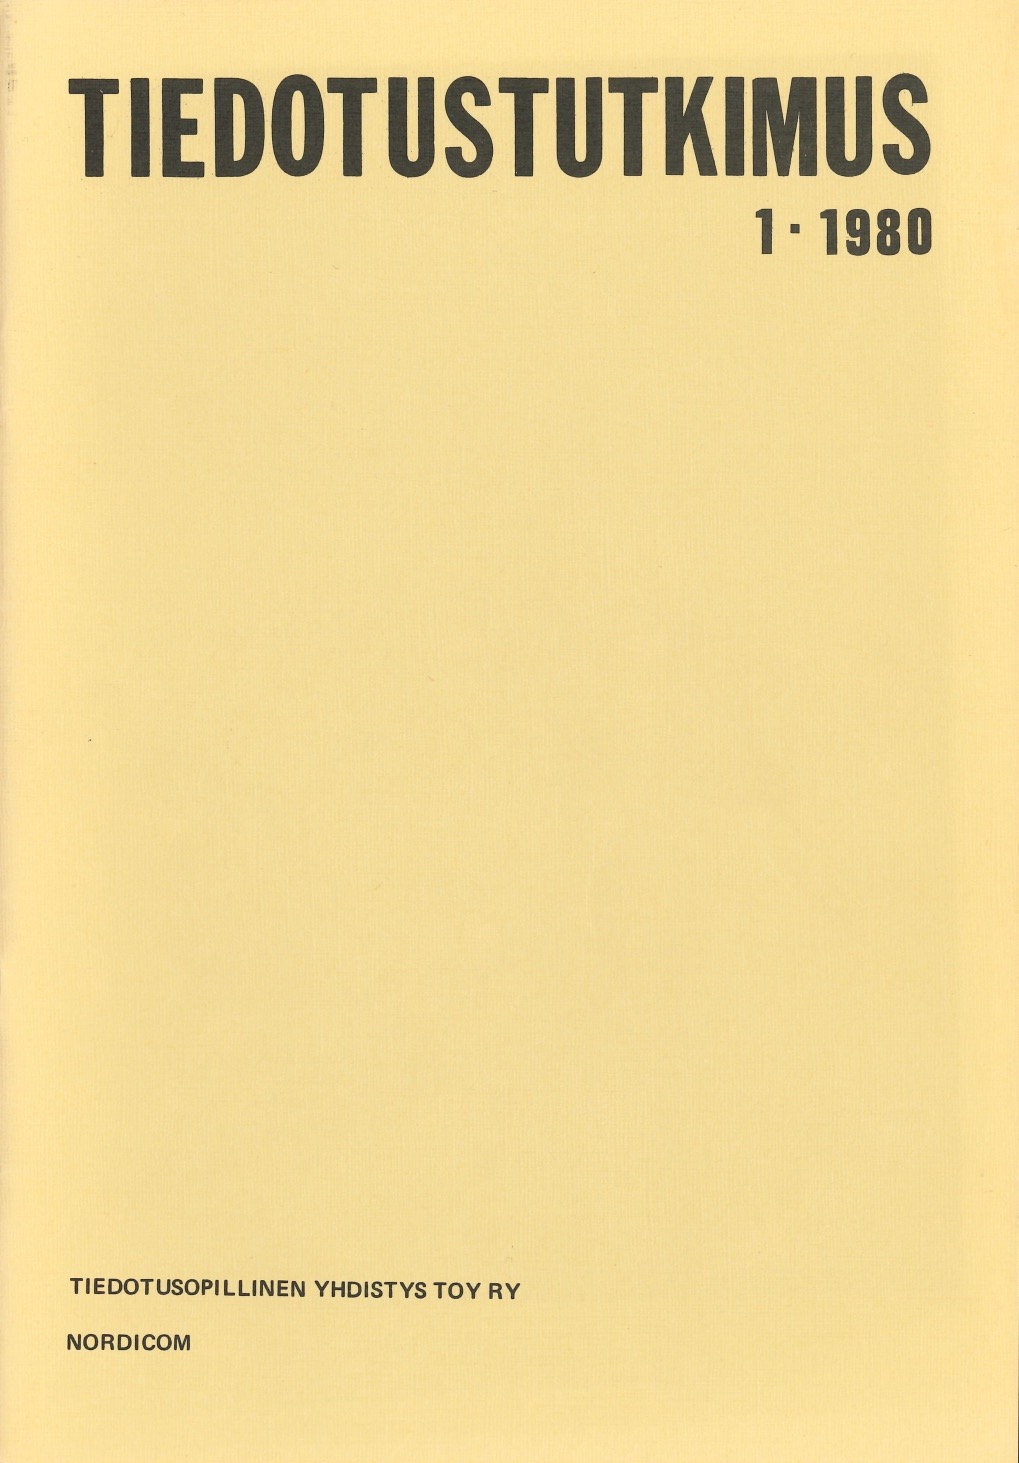 					Näytä Vol 3 Nro 1 (1980)
				